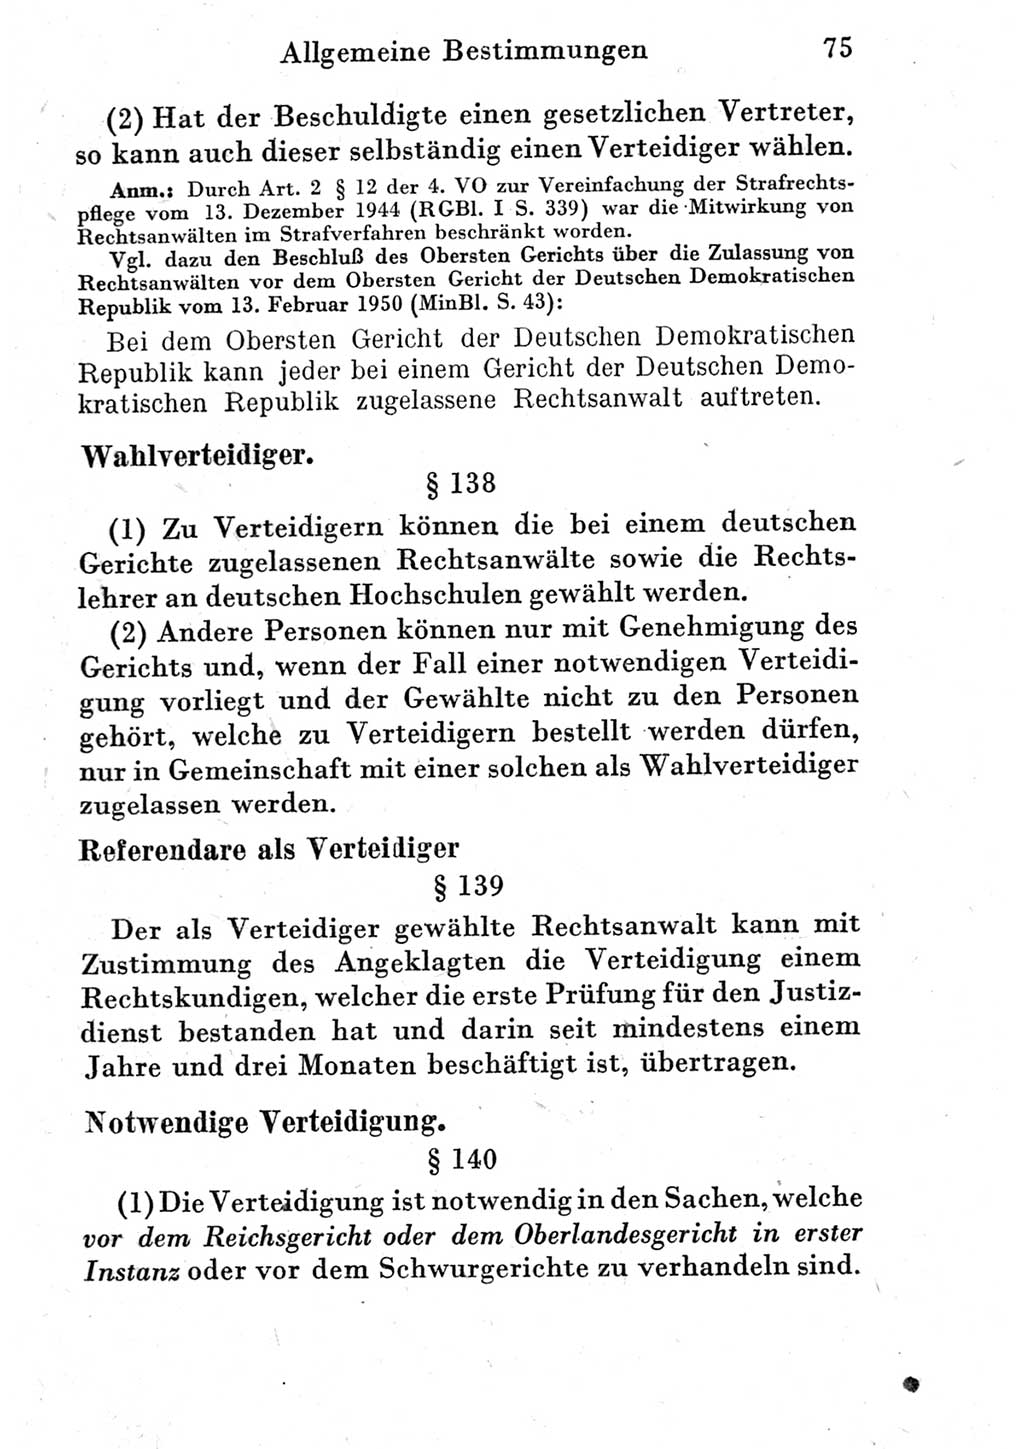 Strafprozeßordnung (StPO), Gerichtsverfassungsgesetz (GVG) und zahlreiche Nebengesetze der Deutschen Demokratischen Republik (DDR) 1950, Seite 75 (StPO GVG Ges. DDR 1950, S. 75)